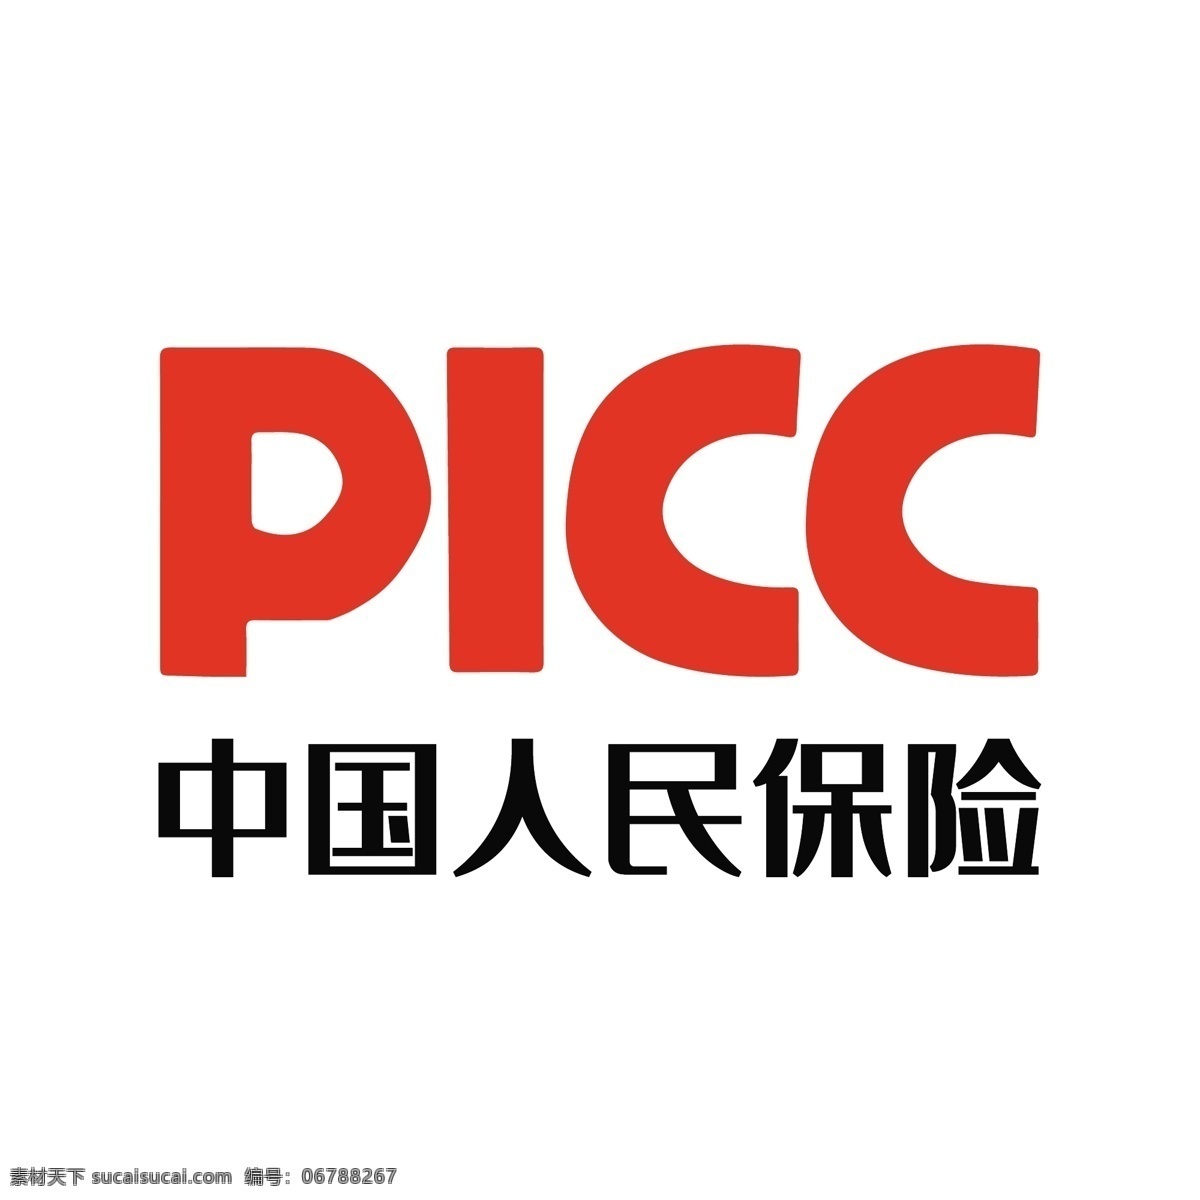 中国人民保险 橙色picc 25dlogo 图标 免抠图 logo设计